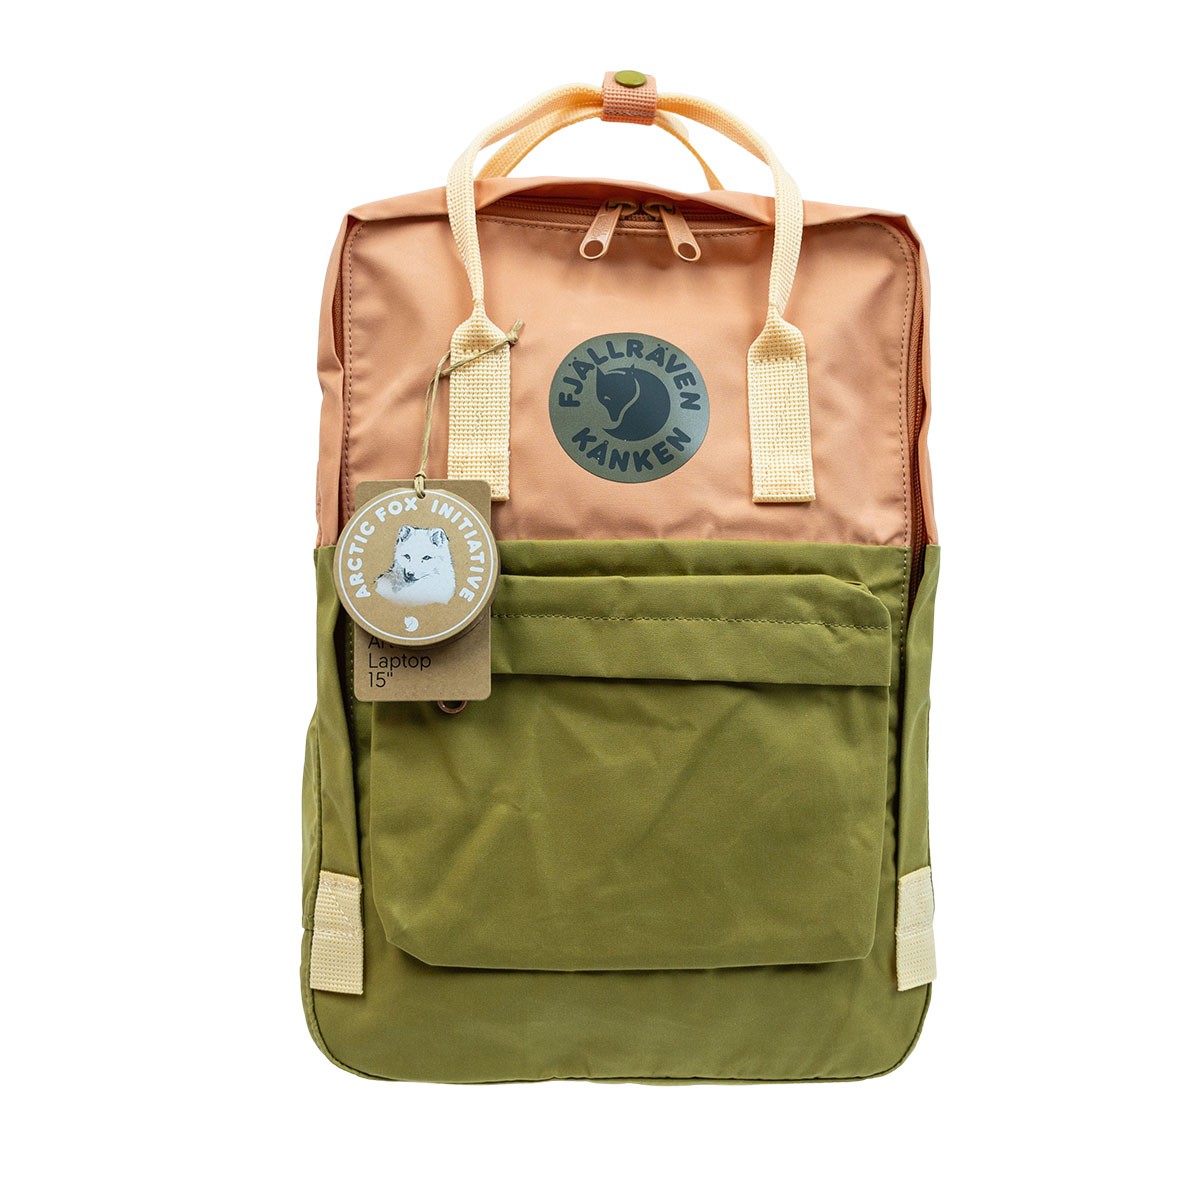 Fjallraven Kanken - 15" Notebook Backpack 18L 15寸筆電背囊 Landsort